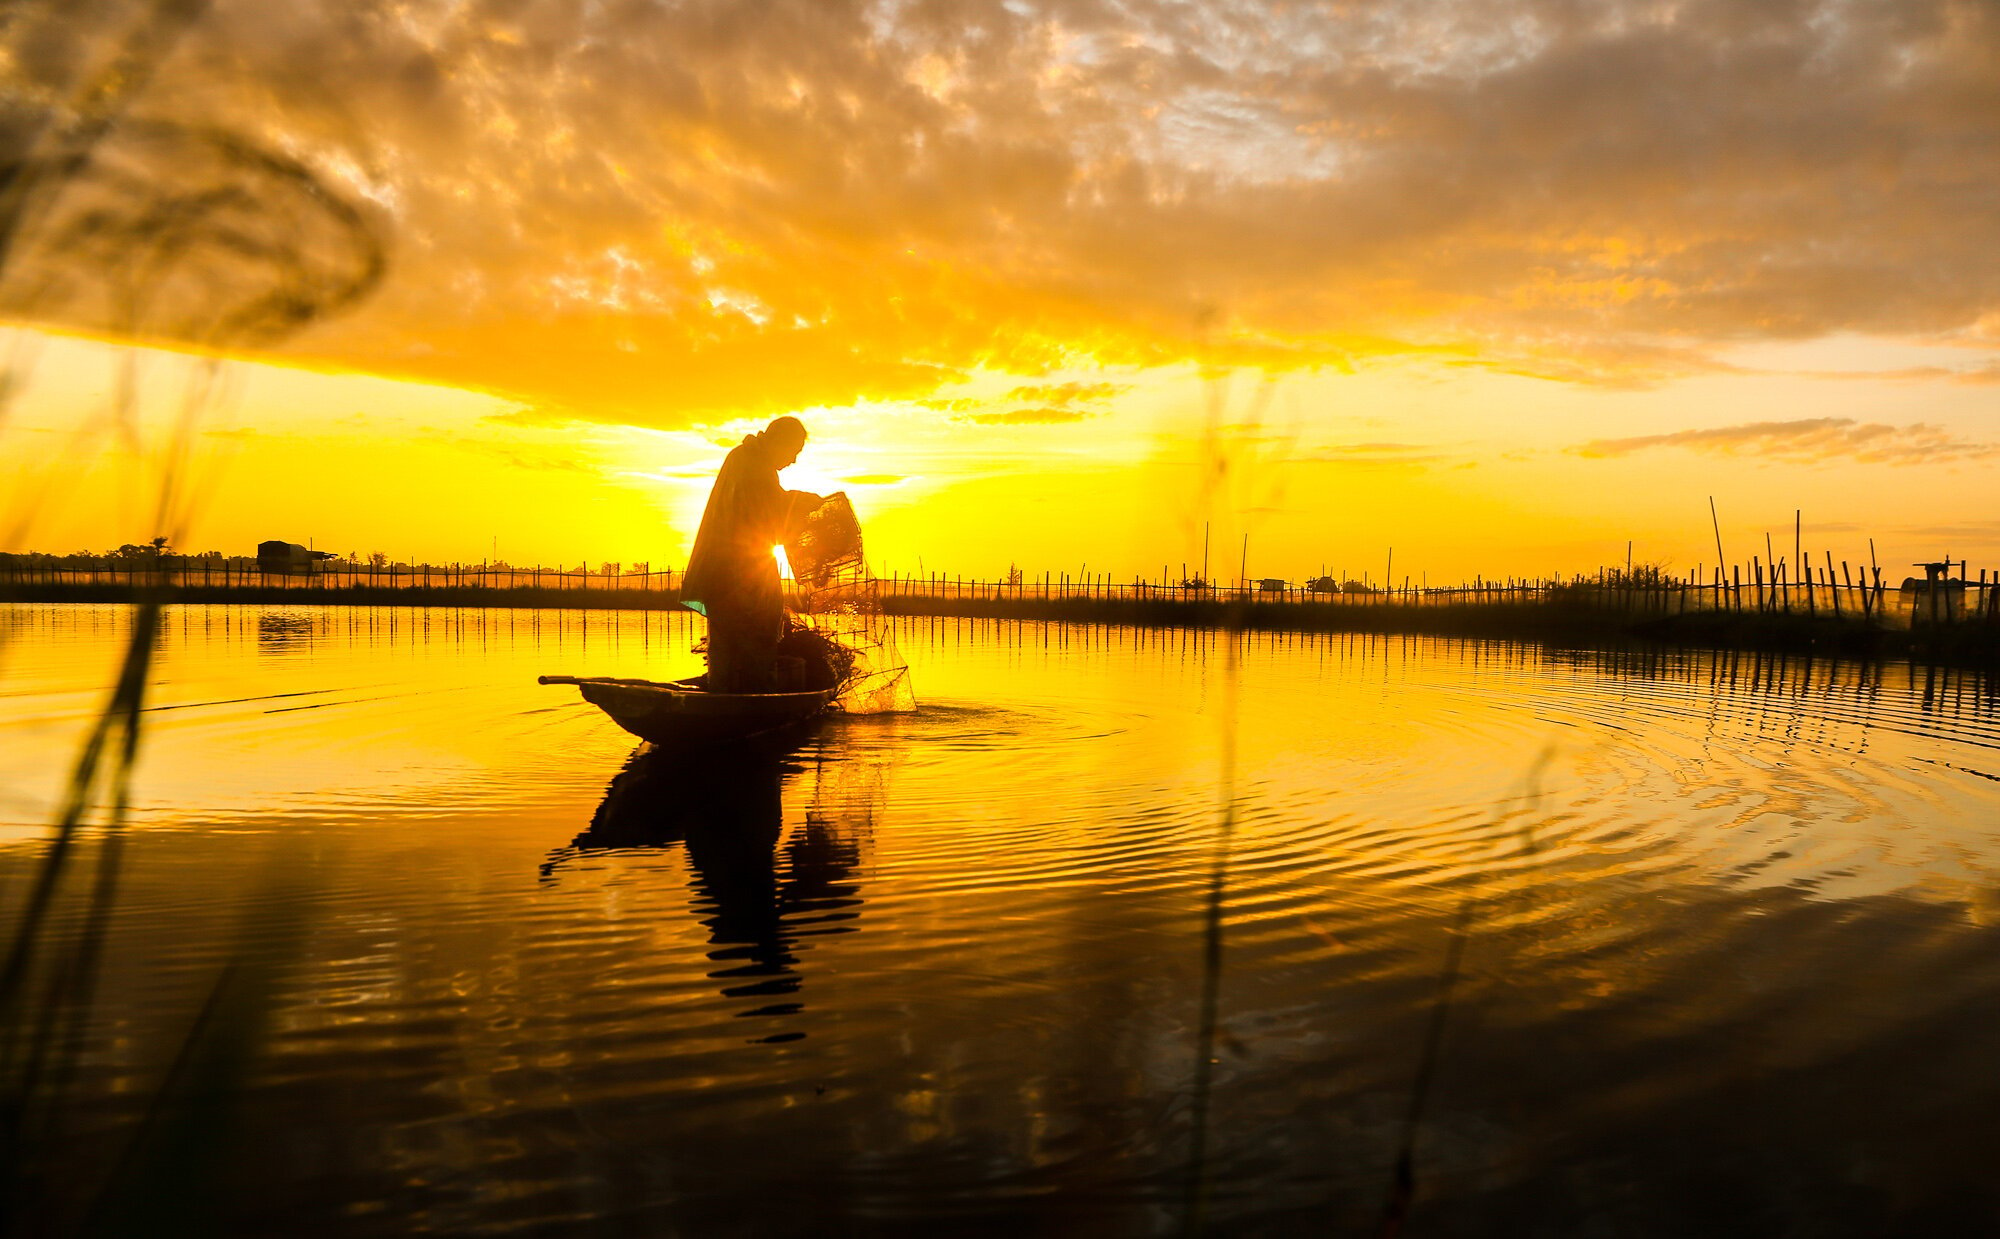 Hãy đón bình minh cùng Tam Giang, một trong những khu vực hữu tình và lãng mạn nhất miền Trung đấy! Với những ánh nắng coi ái mờ len lên trên con sông êm đềm và những cánh đồng lúa bạt ngàn, Tam Giang sẽ là mối đầu tư tuyệt vời cho những buổi sáng đẹp nhất của bạn.